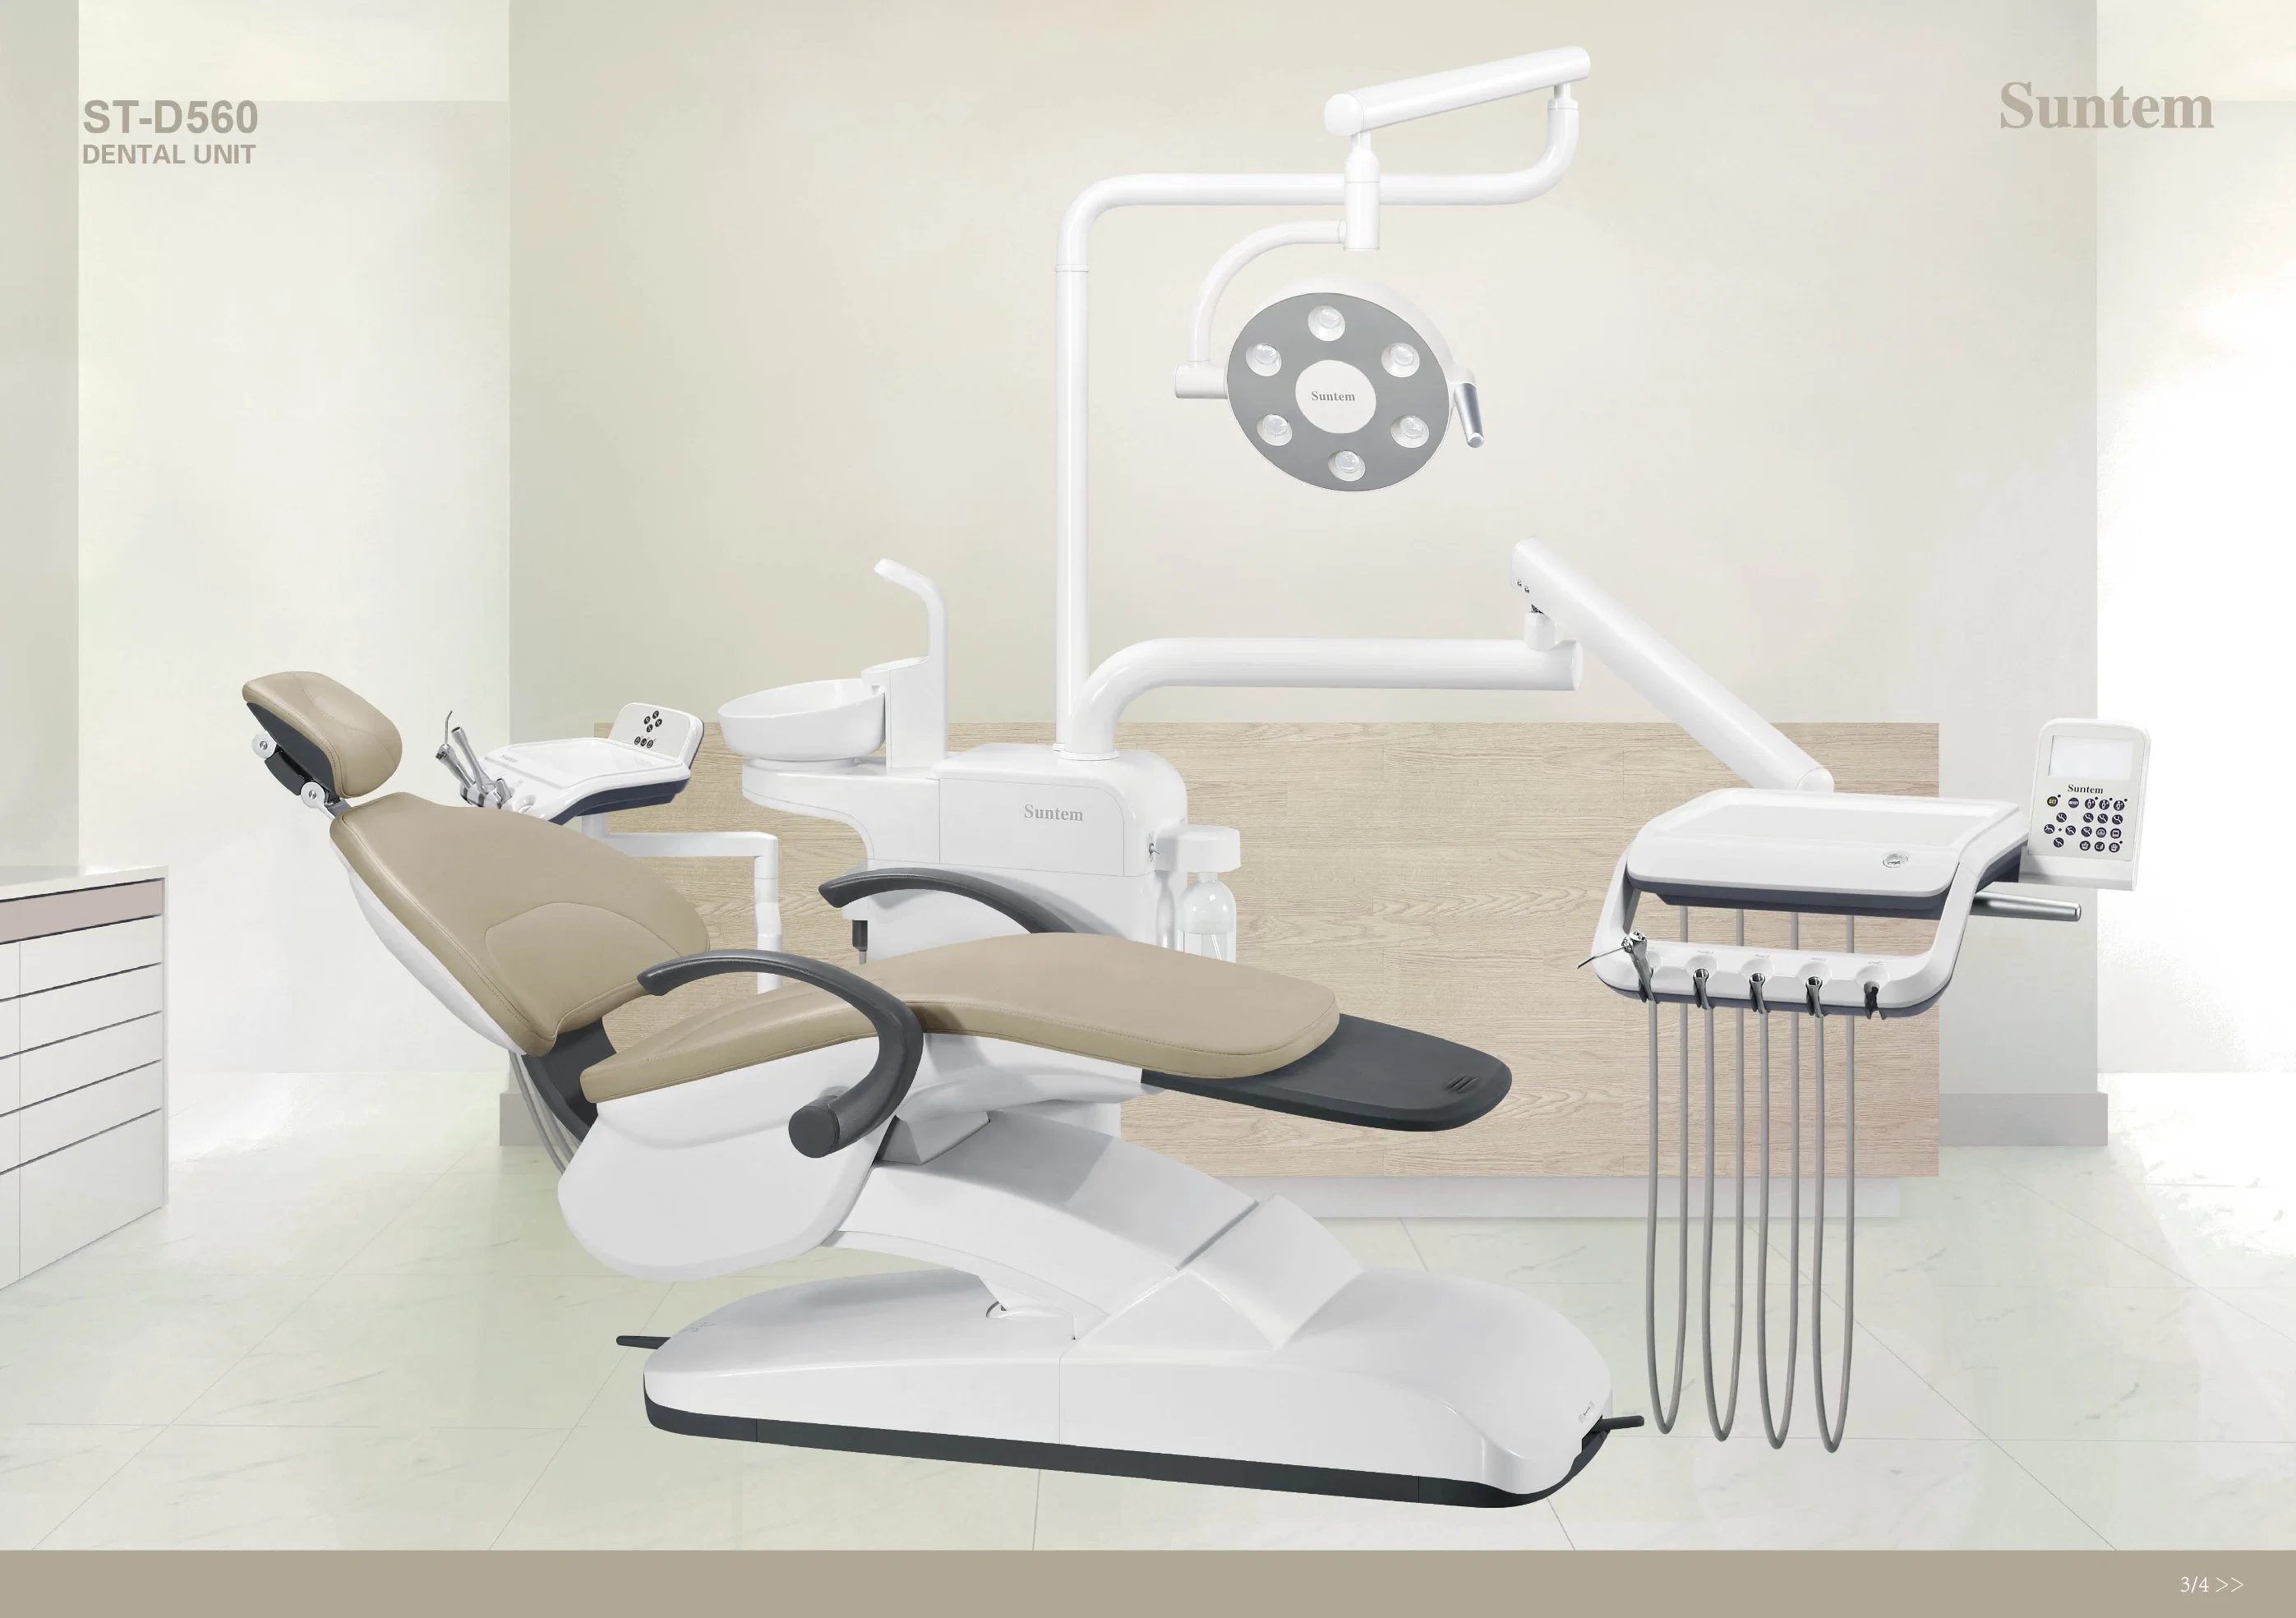 Suntem Dental Unit St-D560 mit europäischem Design/Dental Chair/Low-Mounted/Sicherheit/Desinfektion/CE-Zulassung